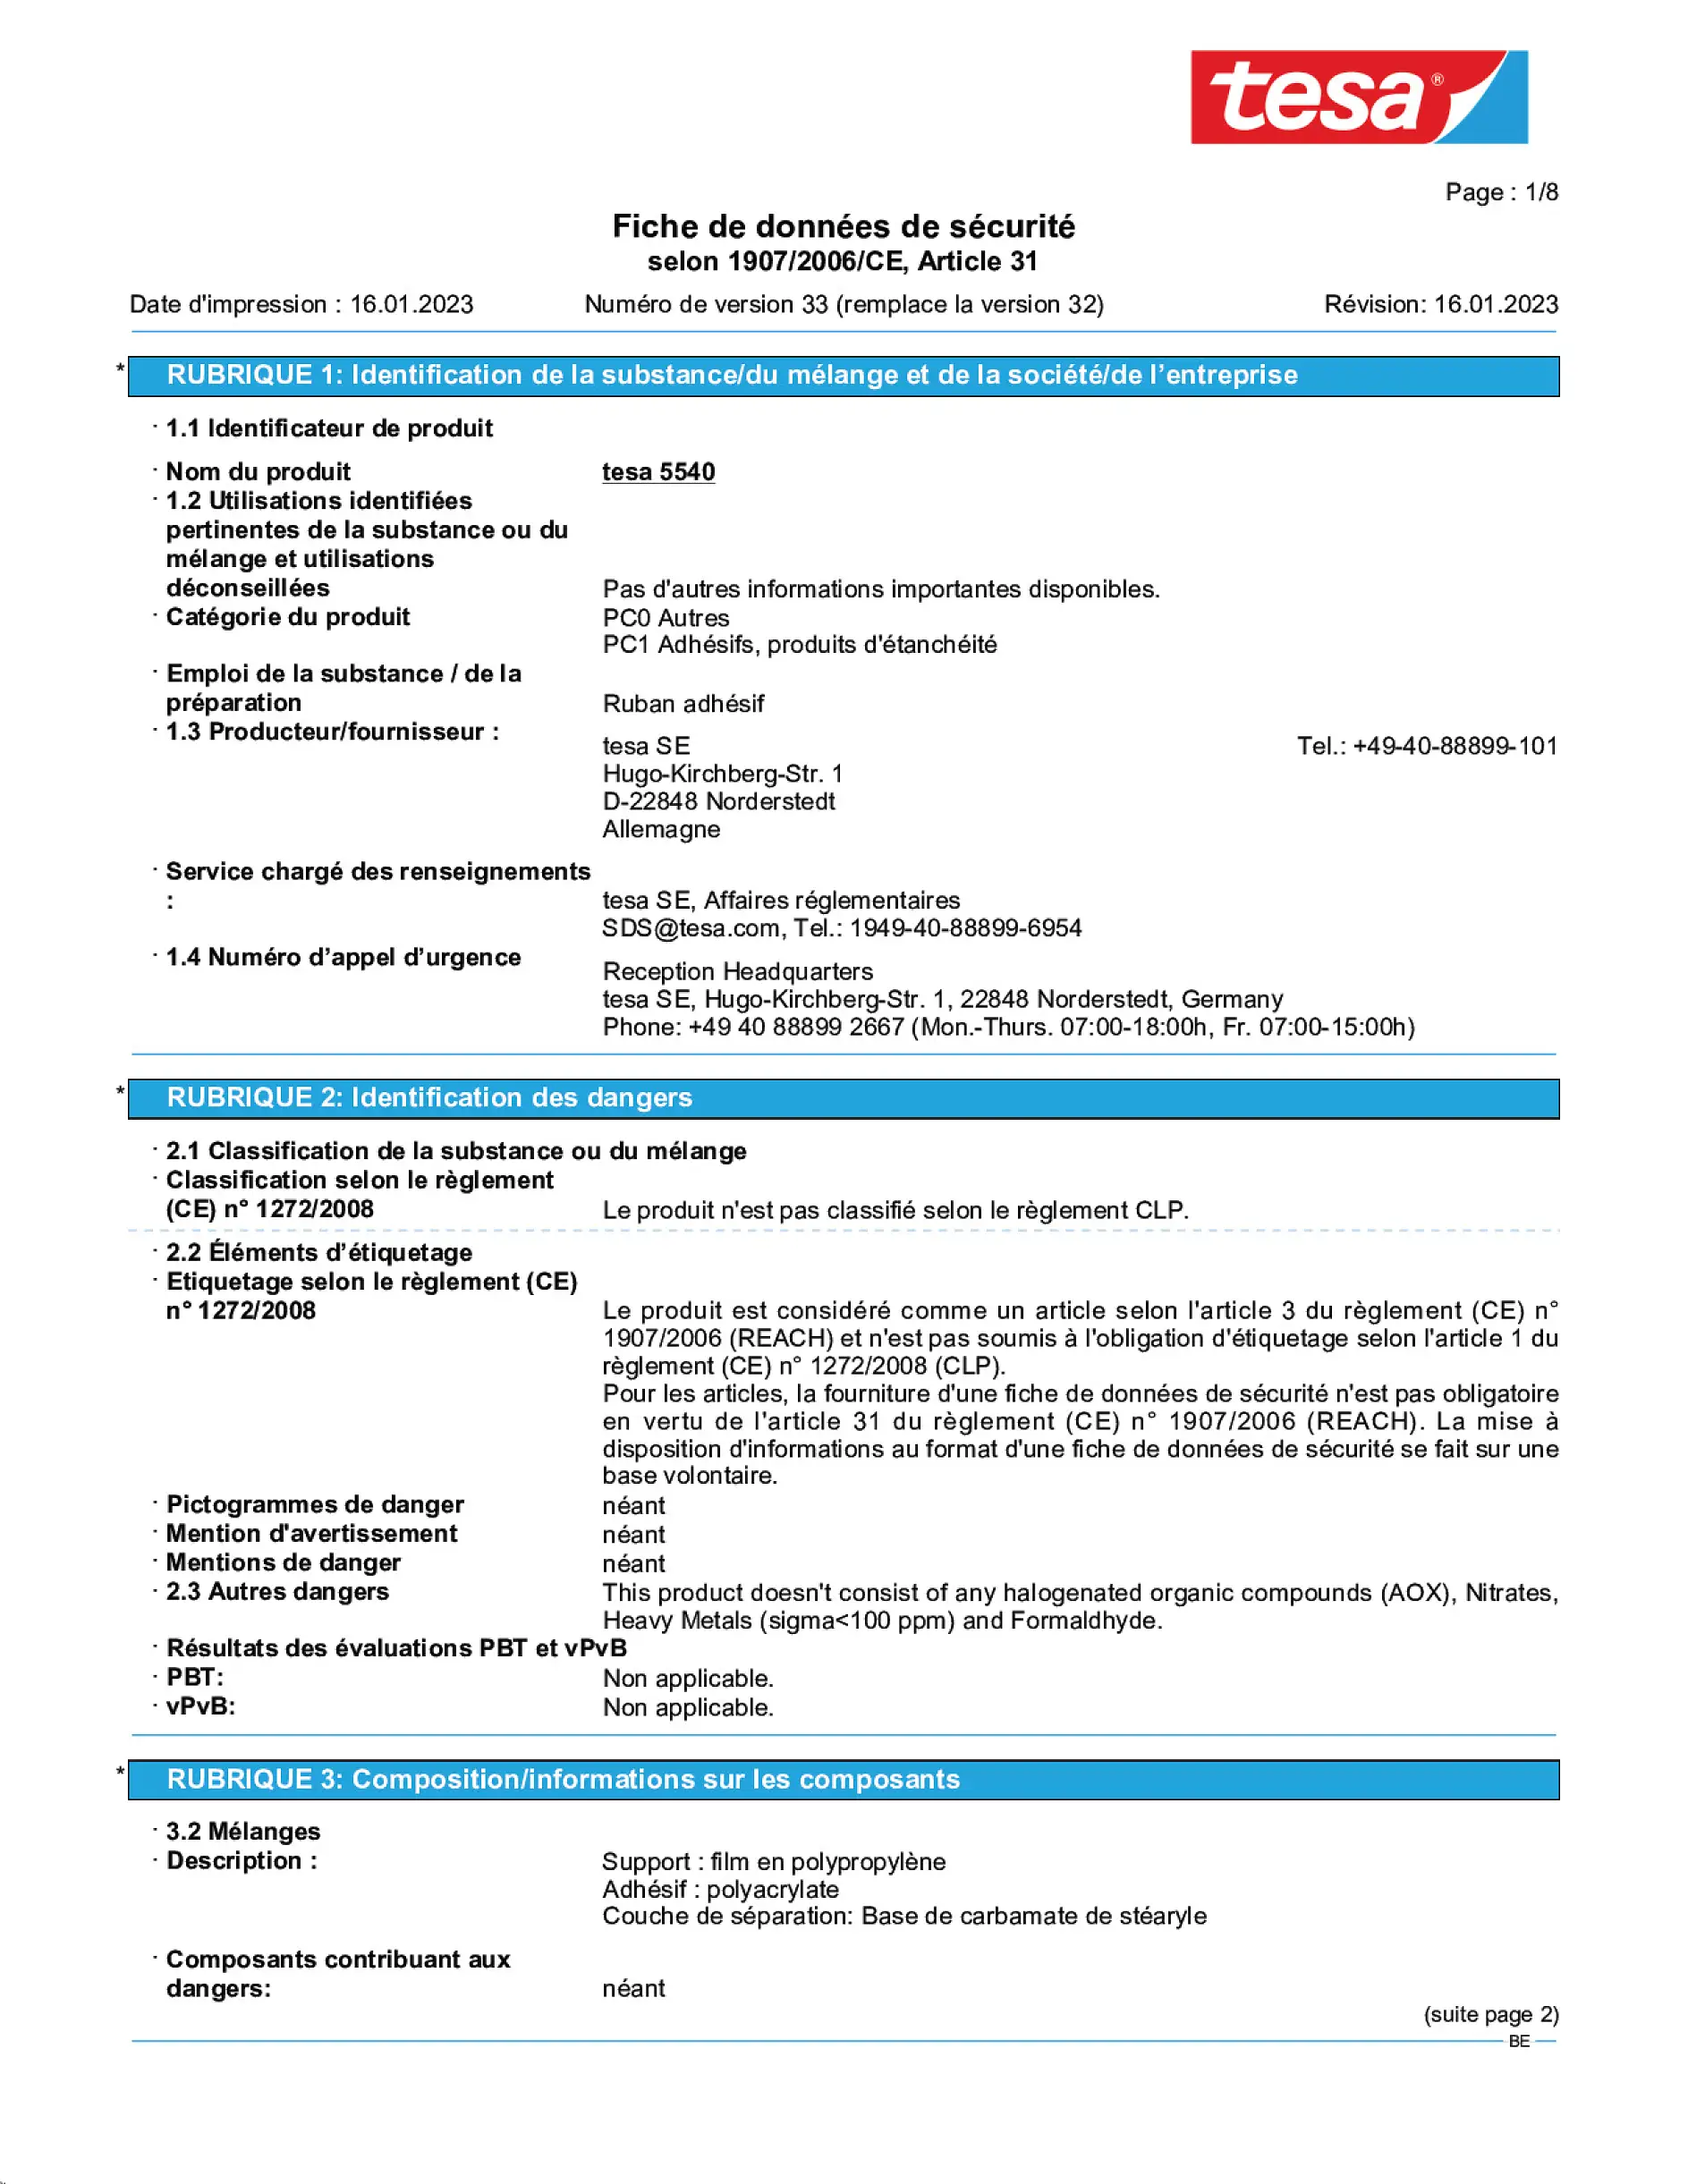 Safety data sheet_tesafilm® 57312_nl-BE_v33